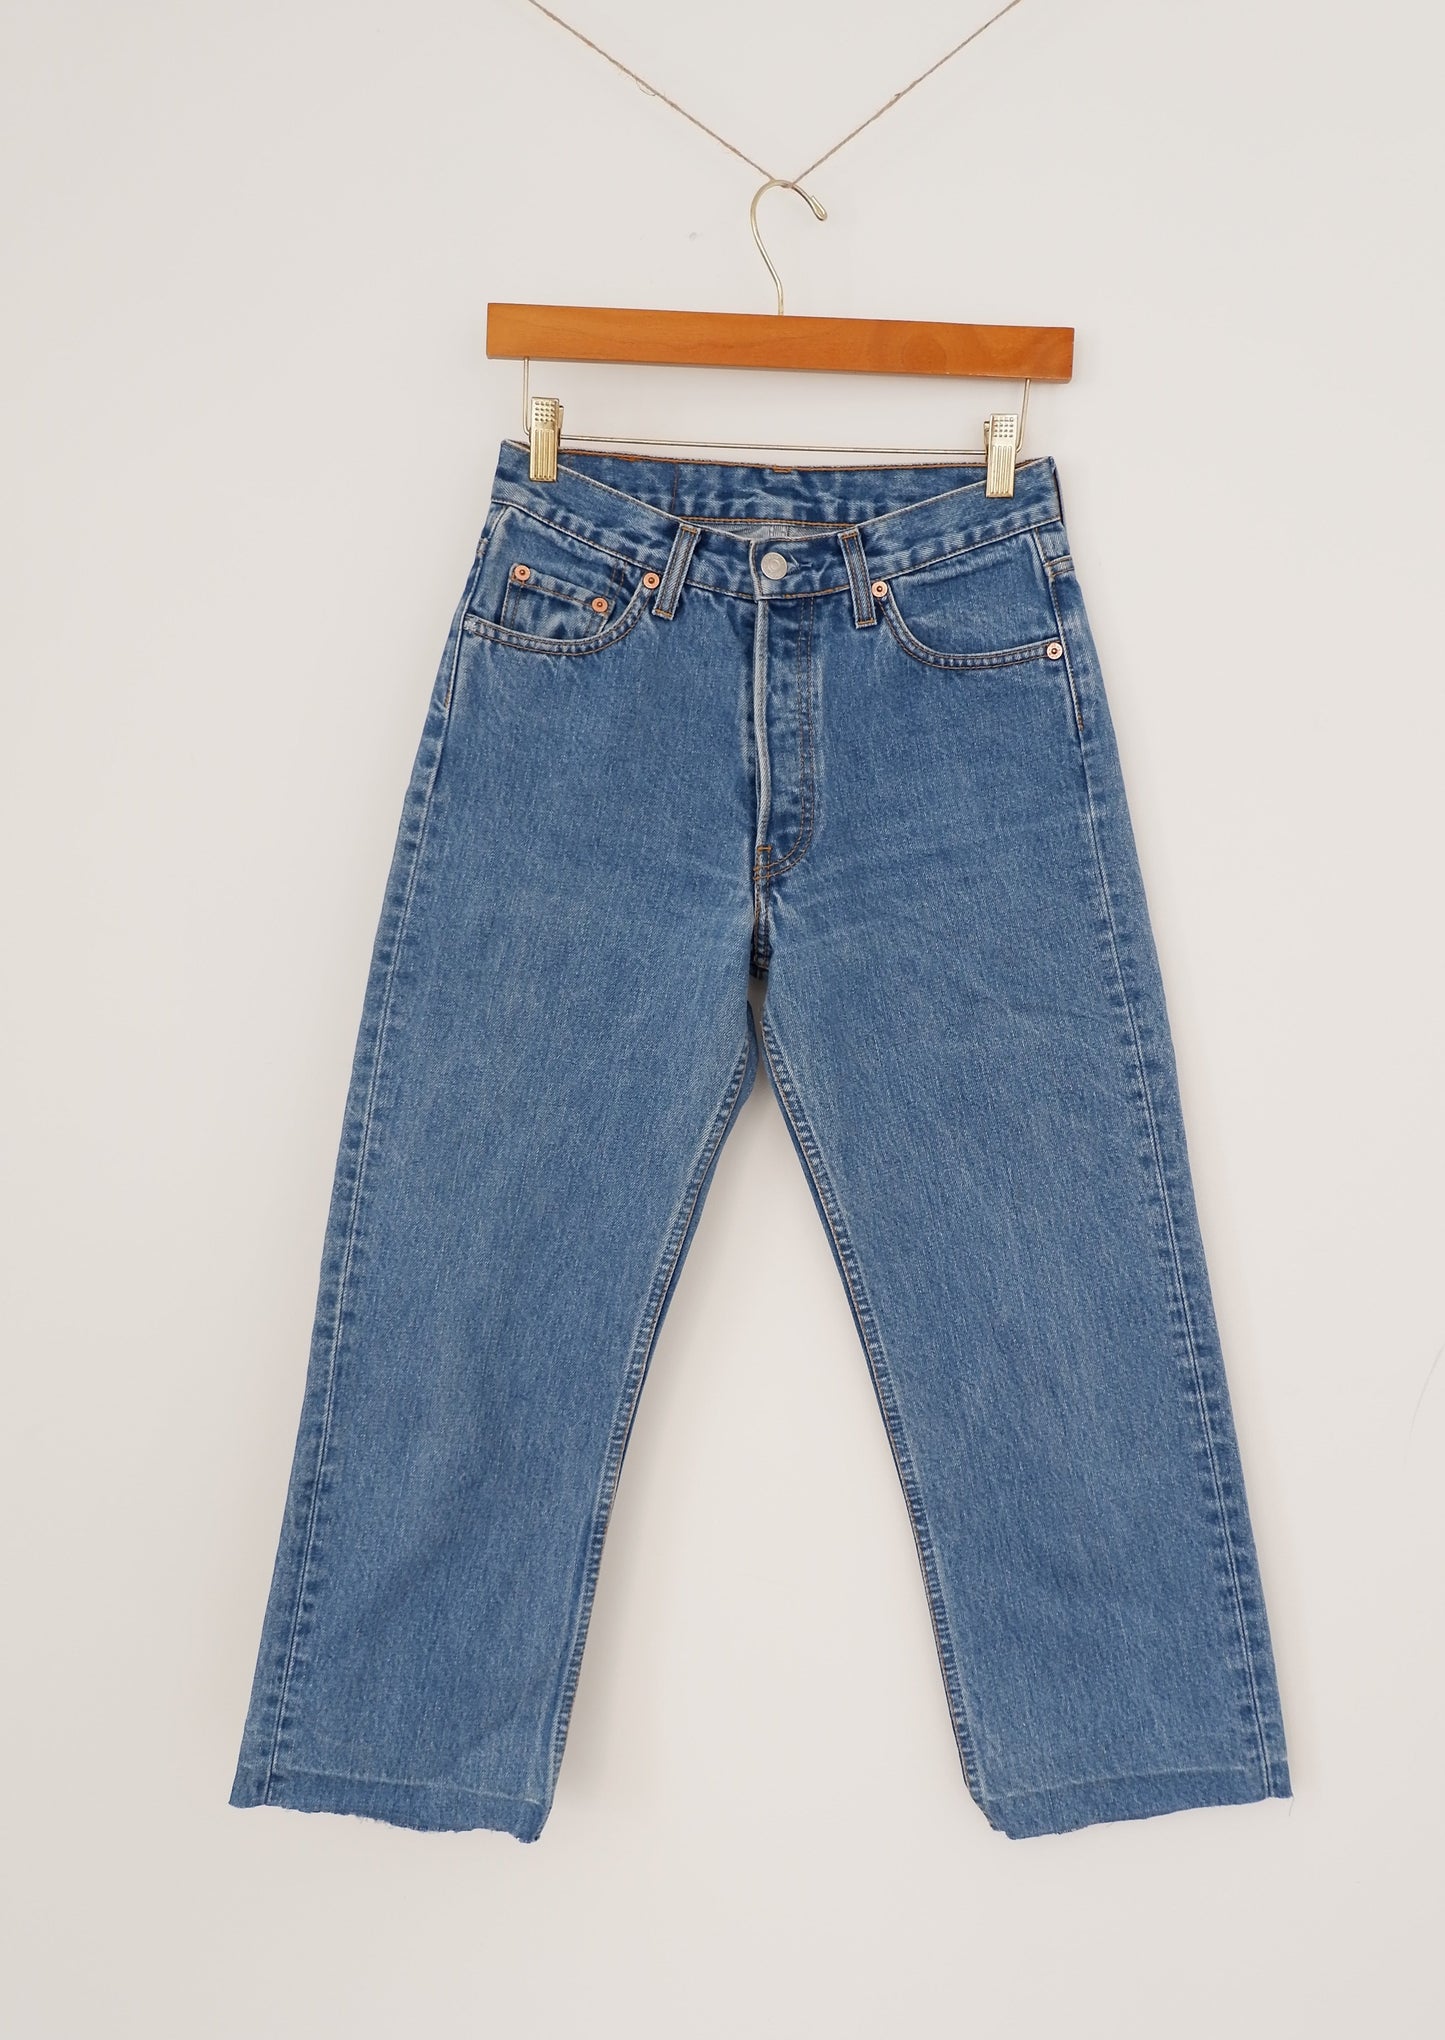 Levis 501 Vintage Medium Wash Straight Leg Jeans - 26